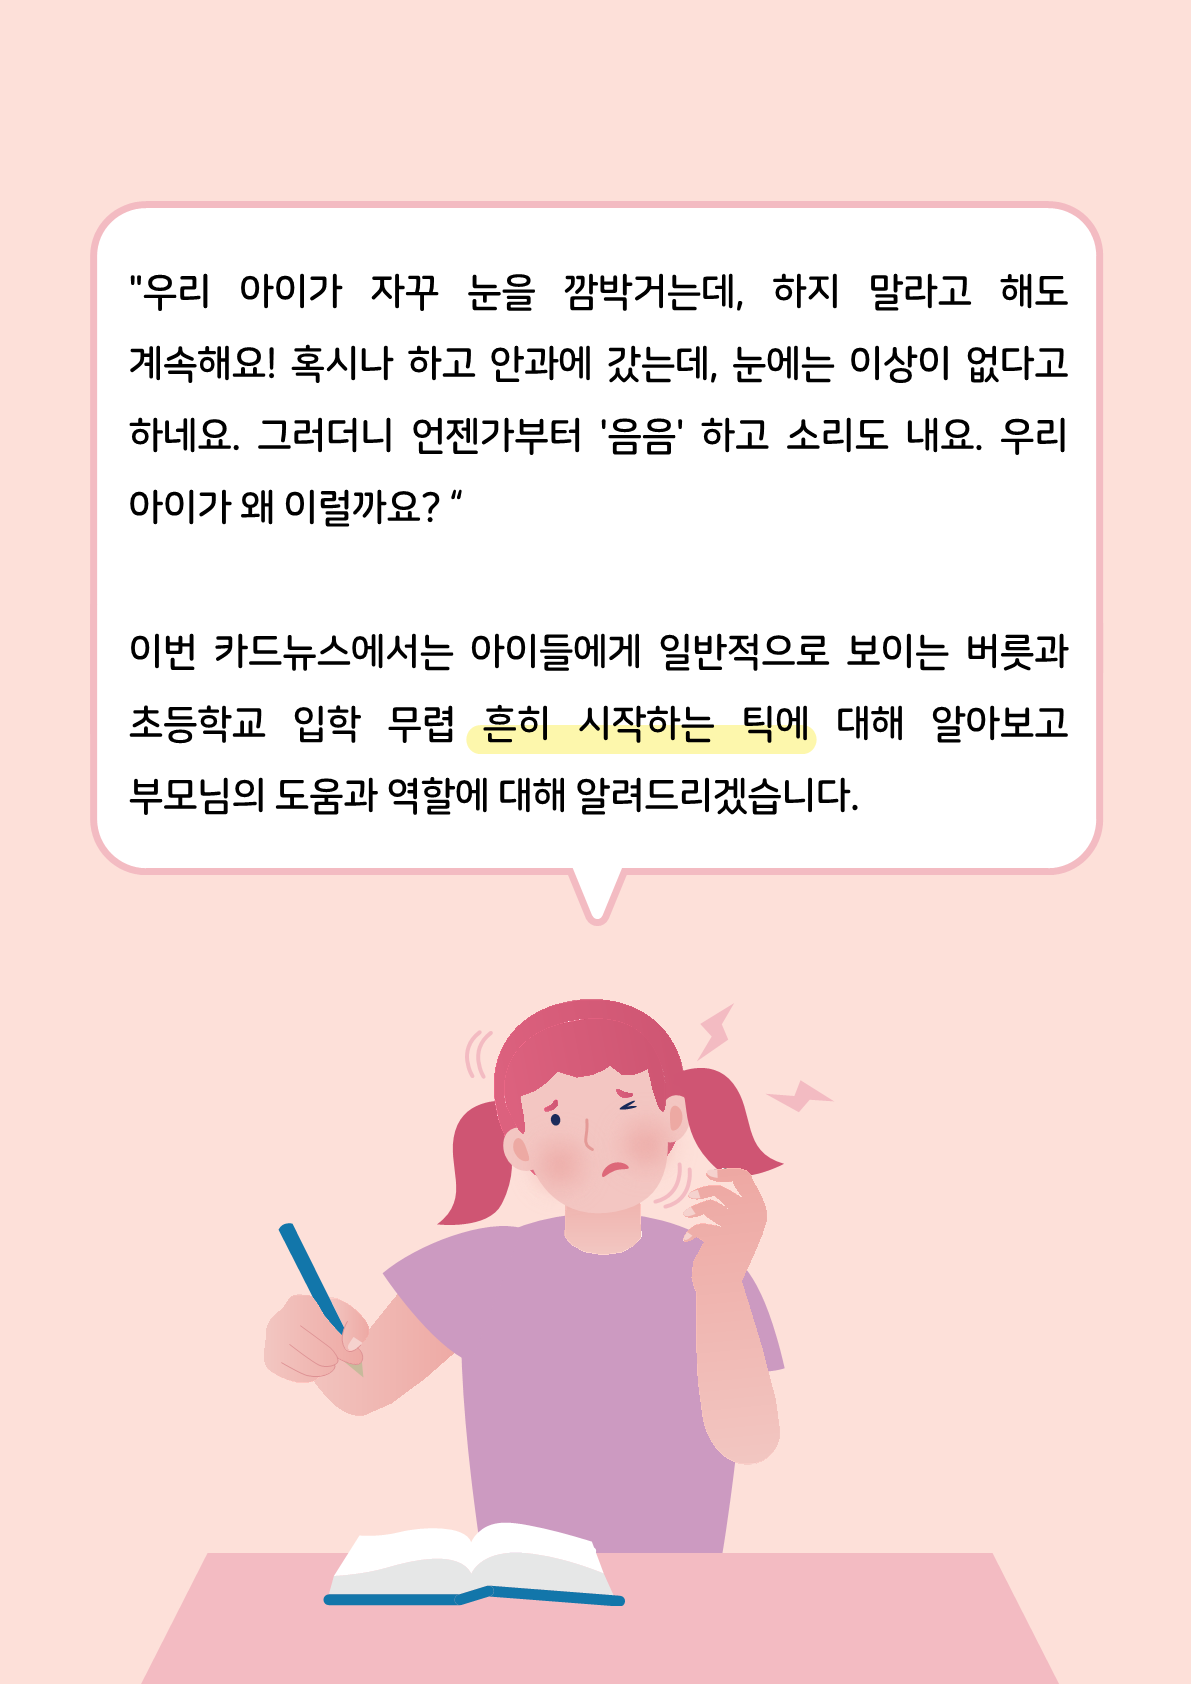 [붙임2]카드뉴스 제2021-5_틱장애(초등학부모용)_2.png